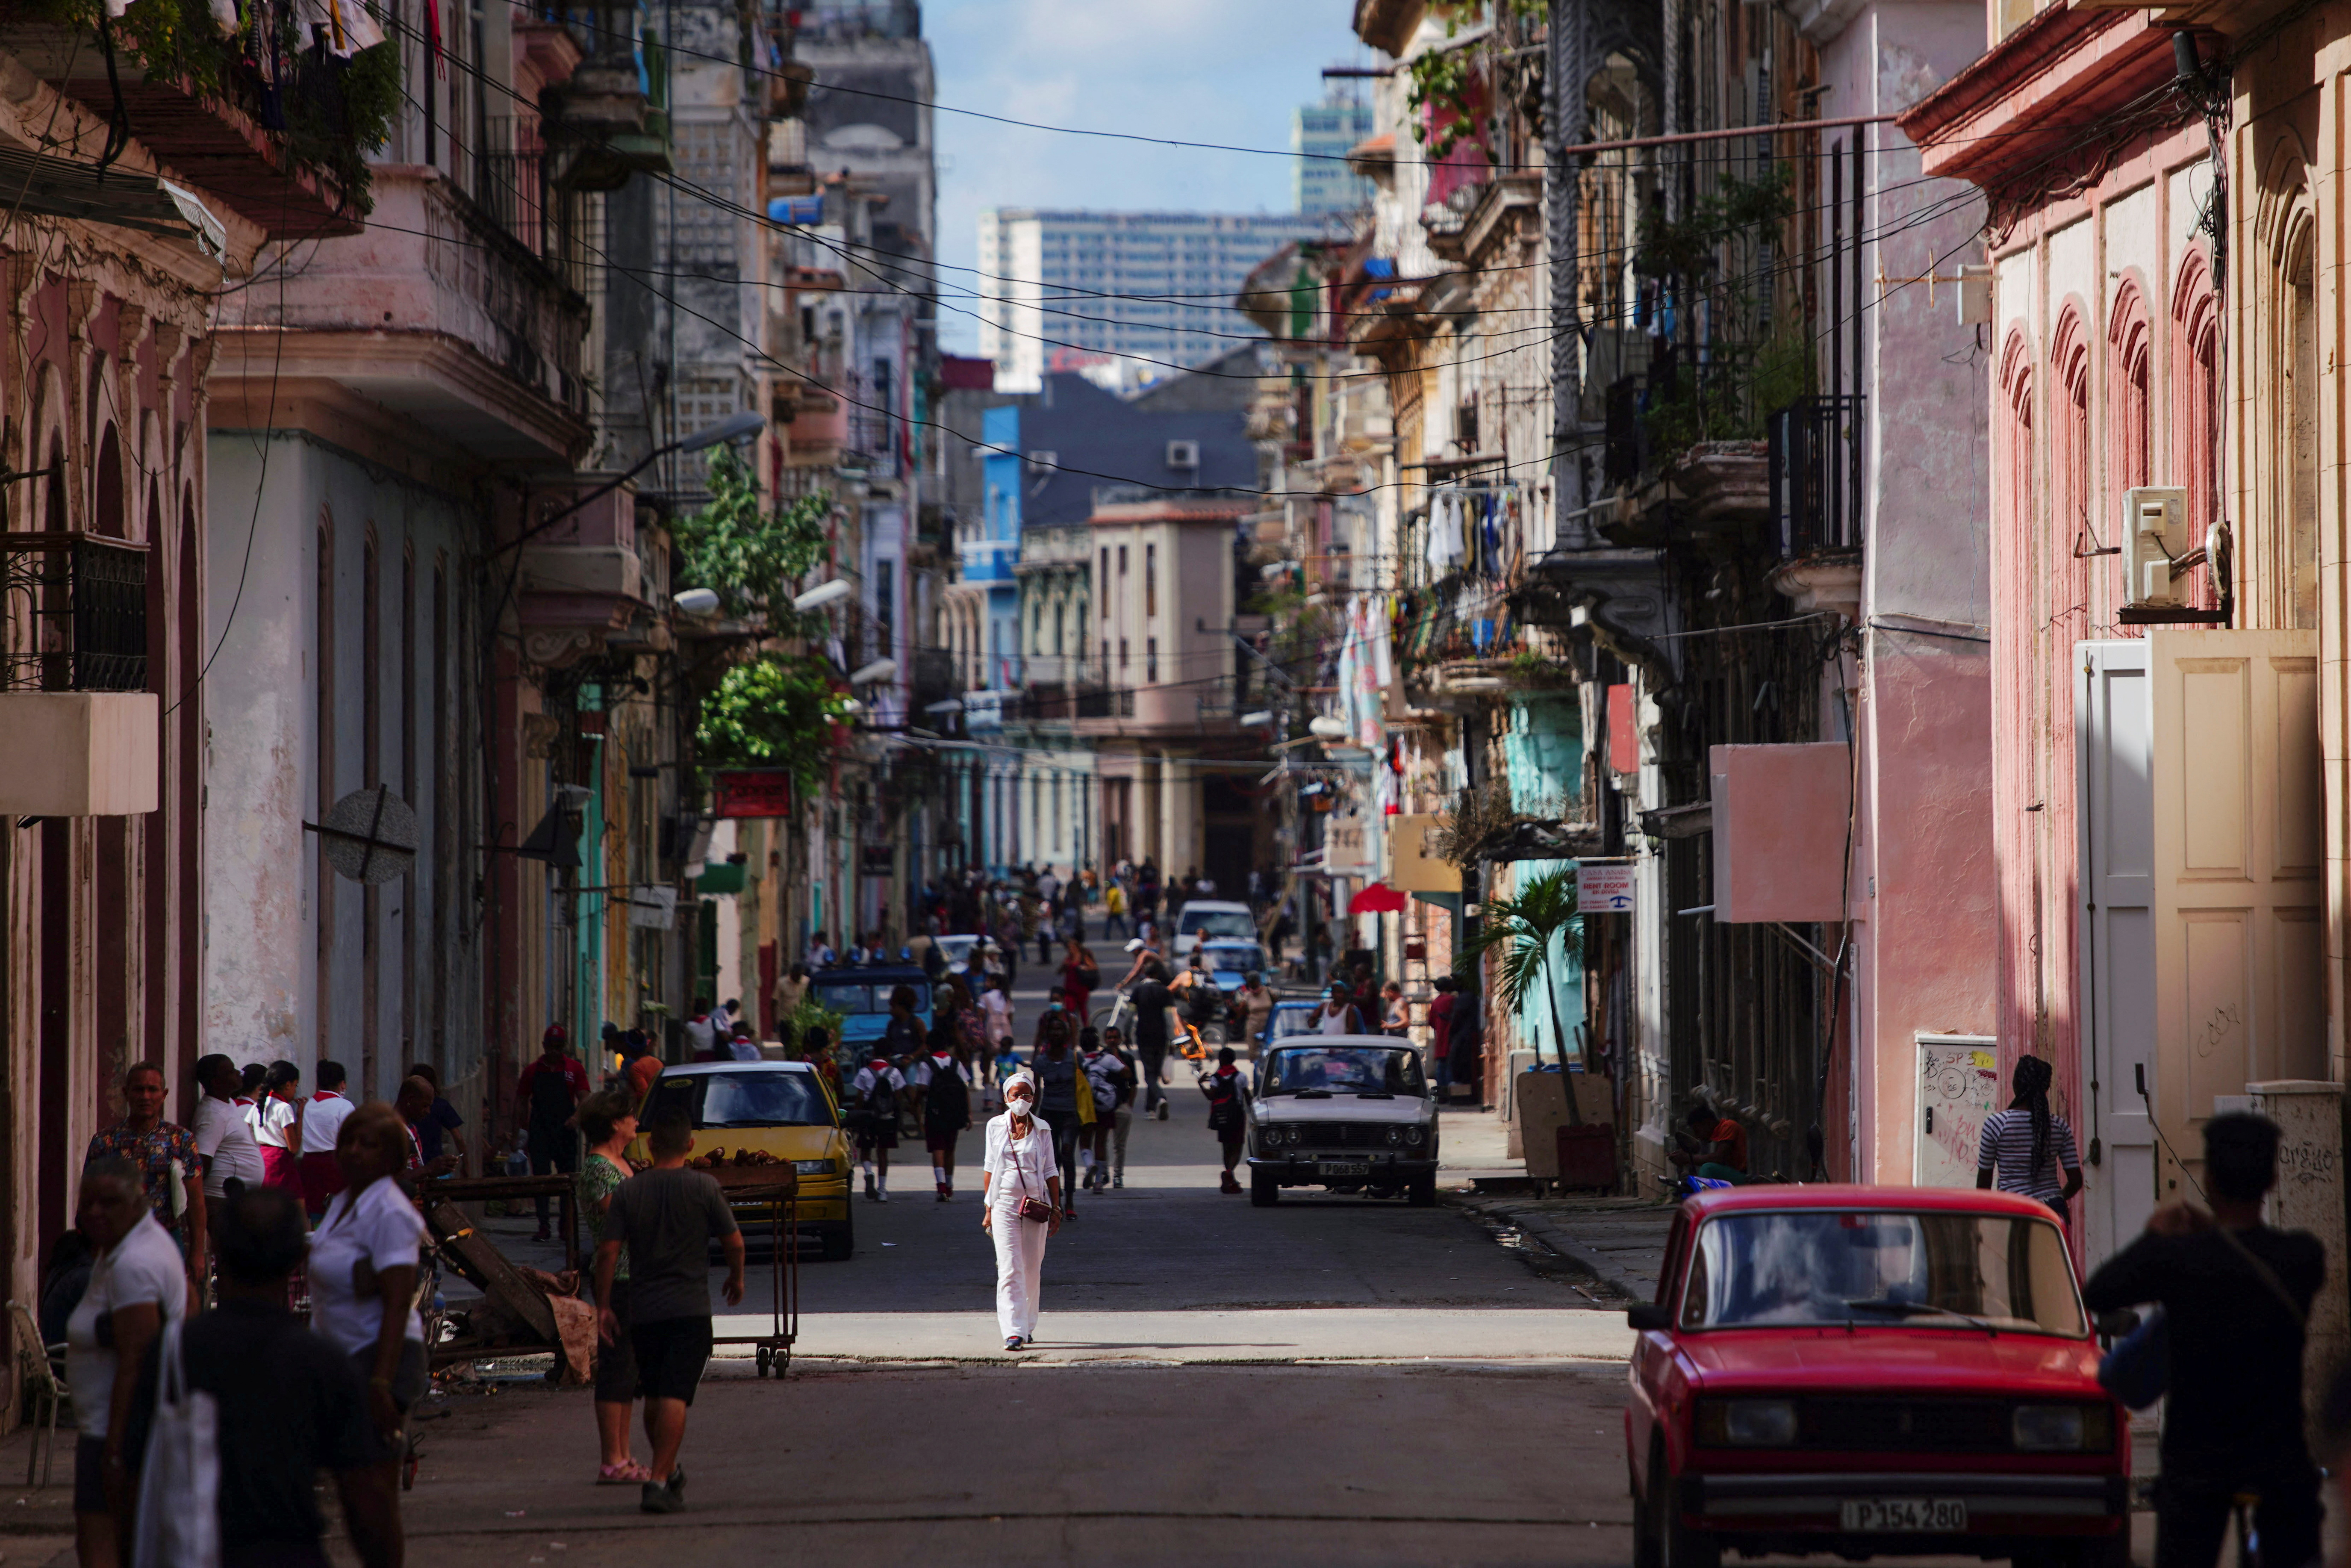 A street view in Havana